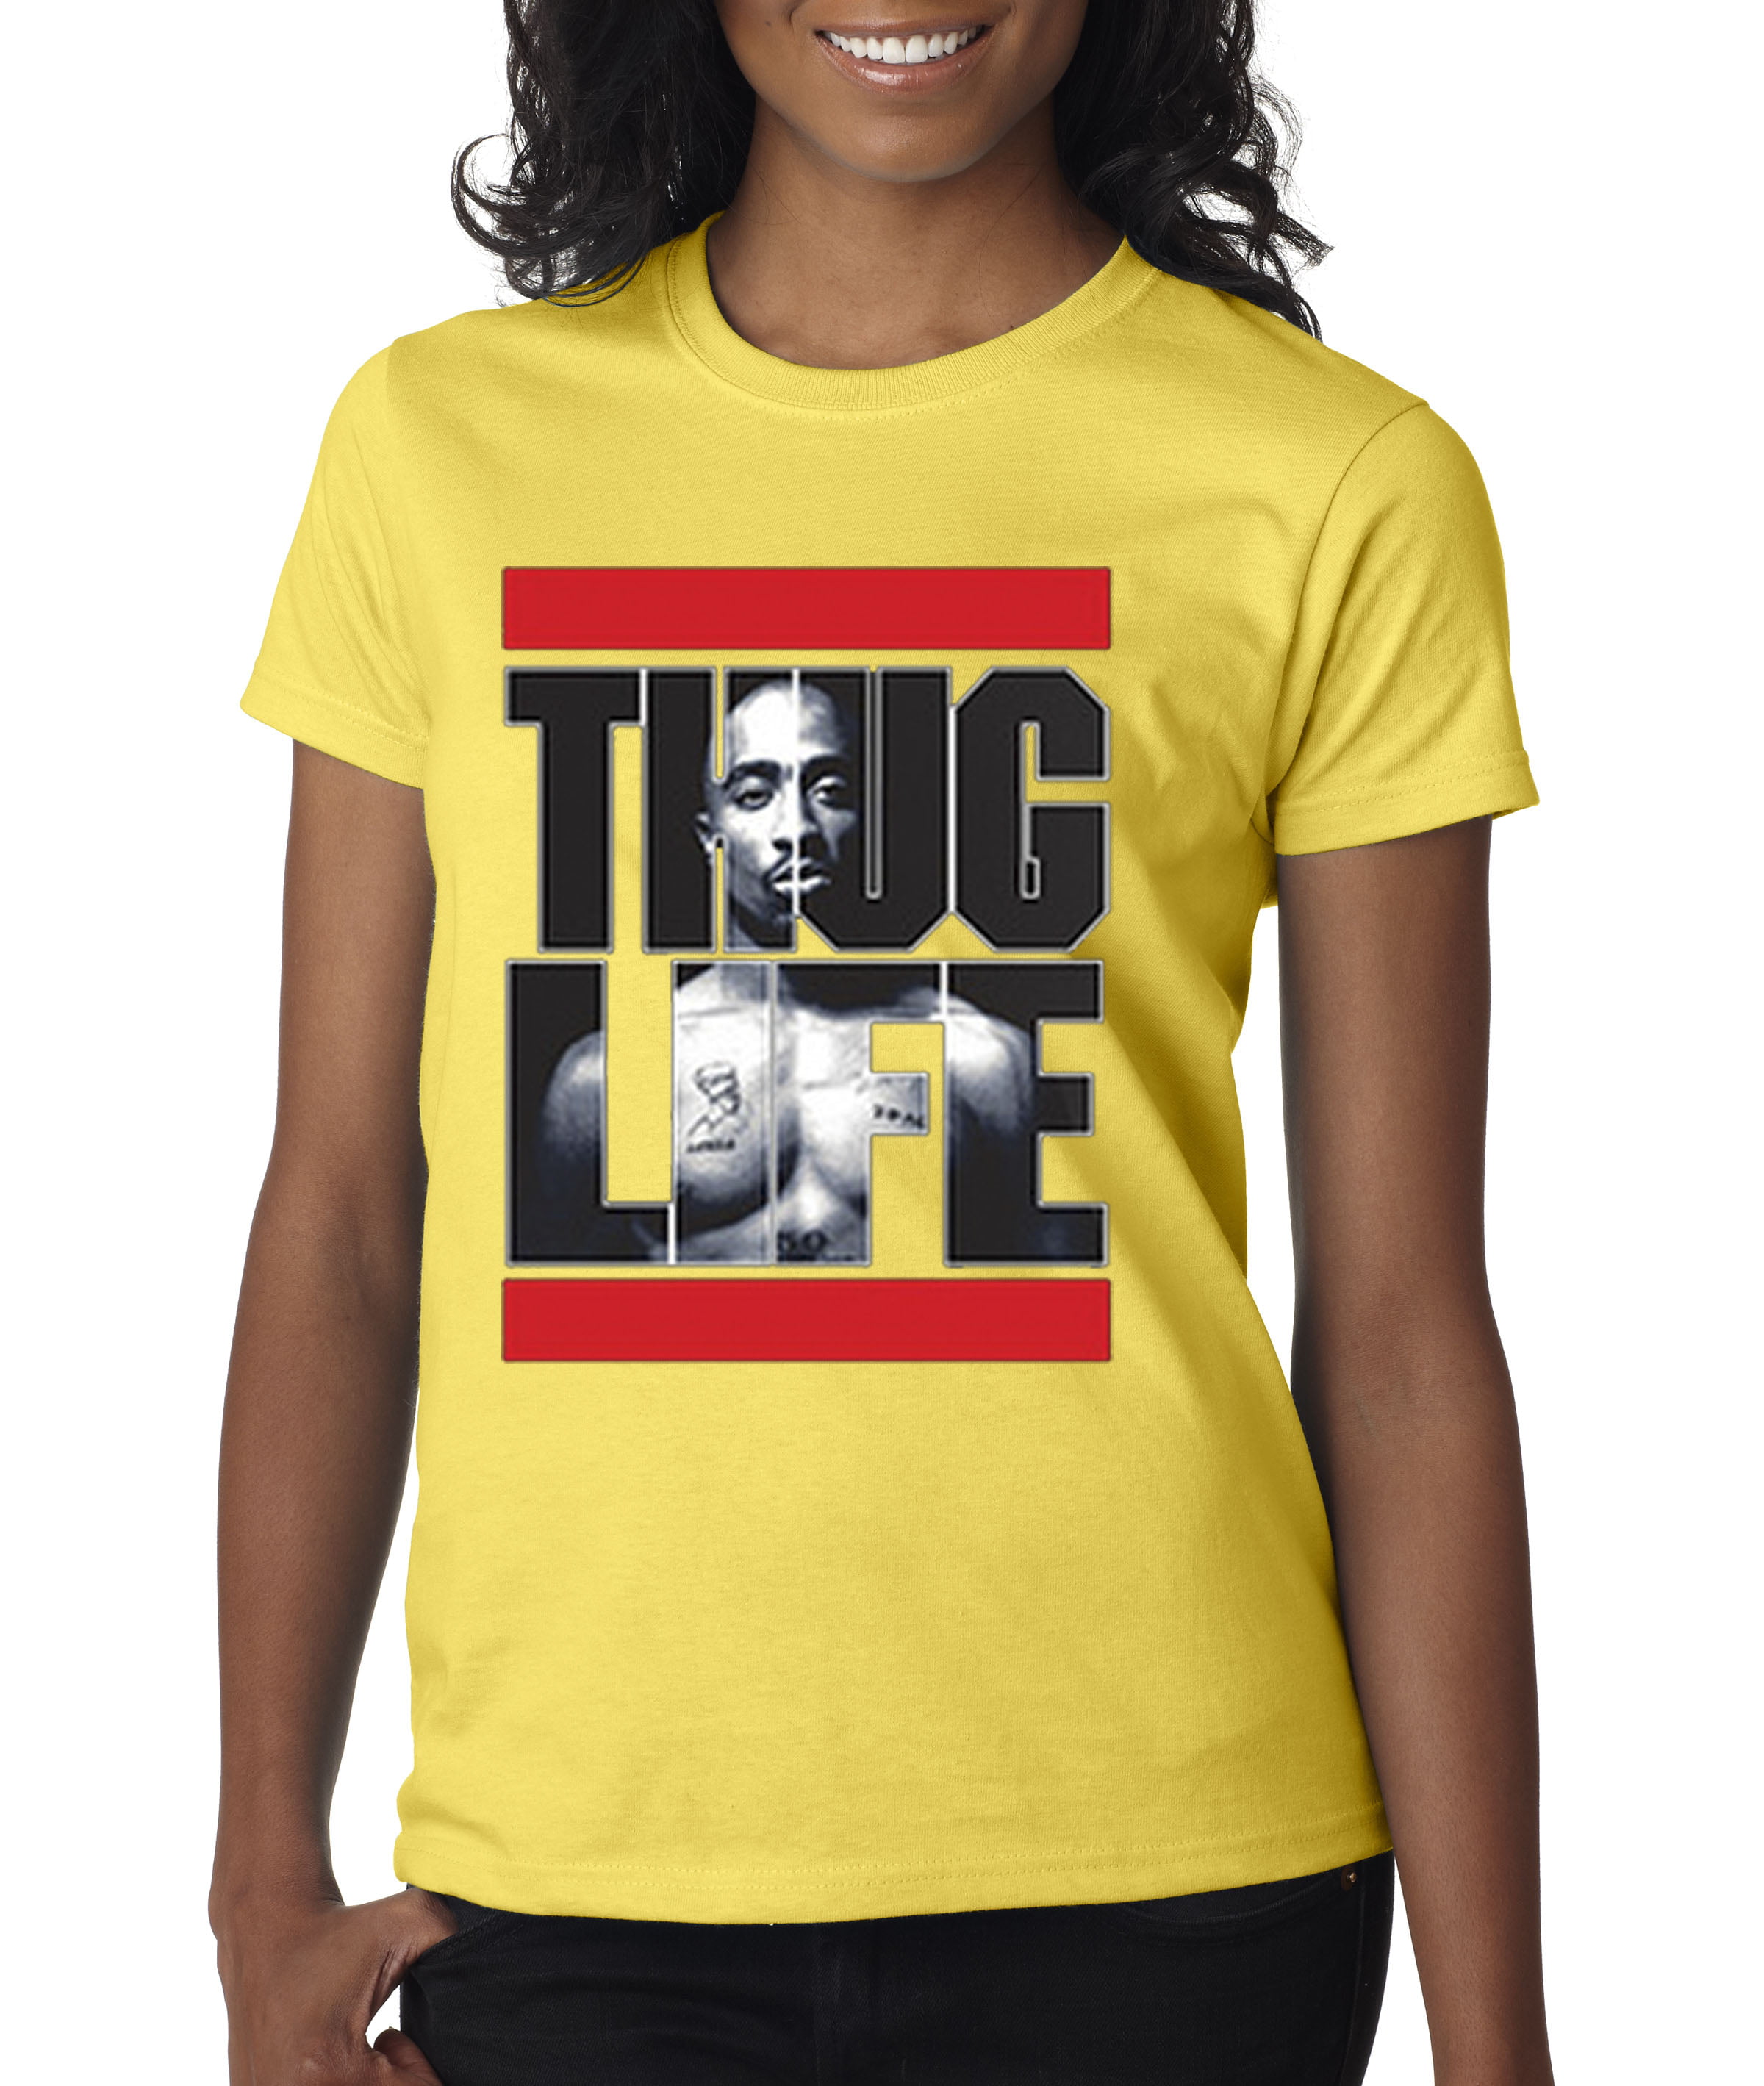 New Way - New Way 417 - Women's T-Shirt Tupac 2pac Thug Life Run DMC ...